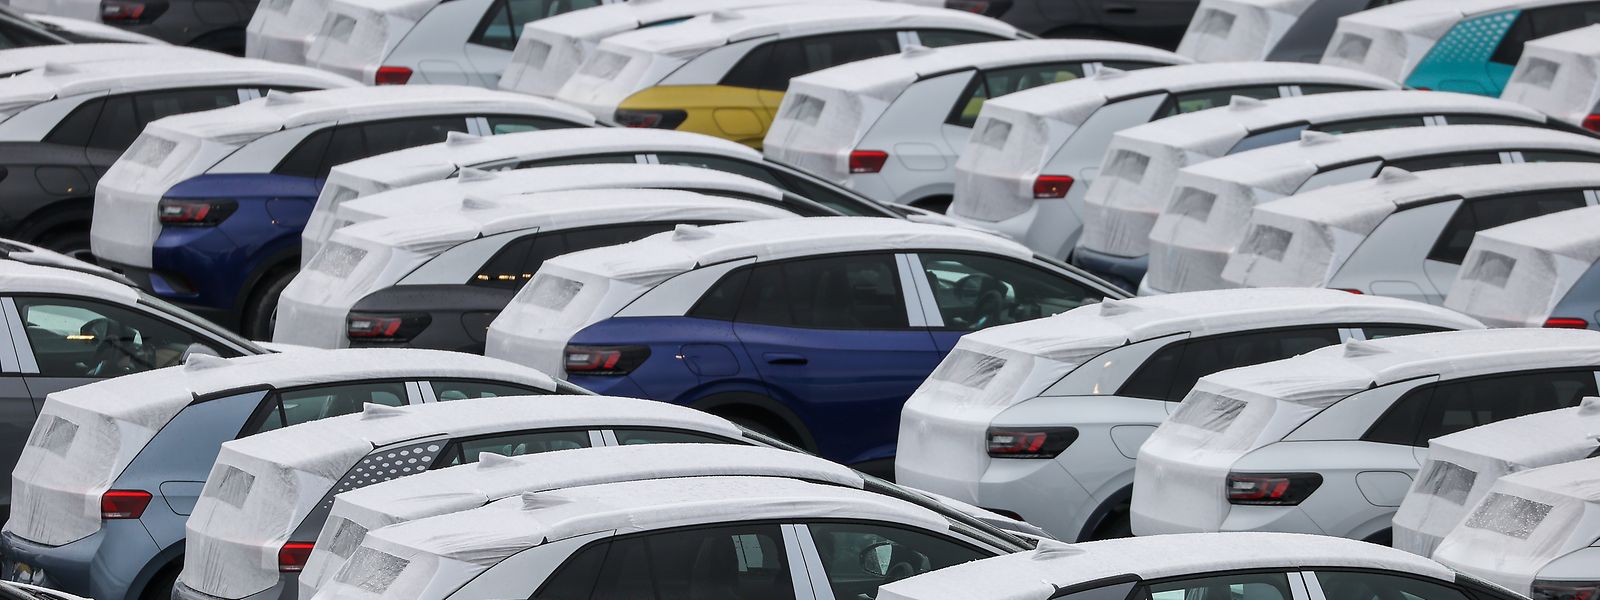 Bereit zur Verladung: Neuwagen des Typs ID.3 und ID.4 stehen auf einem Parkplatz im Zwickauer Volkswagen-Werk.